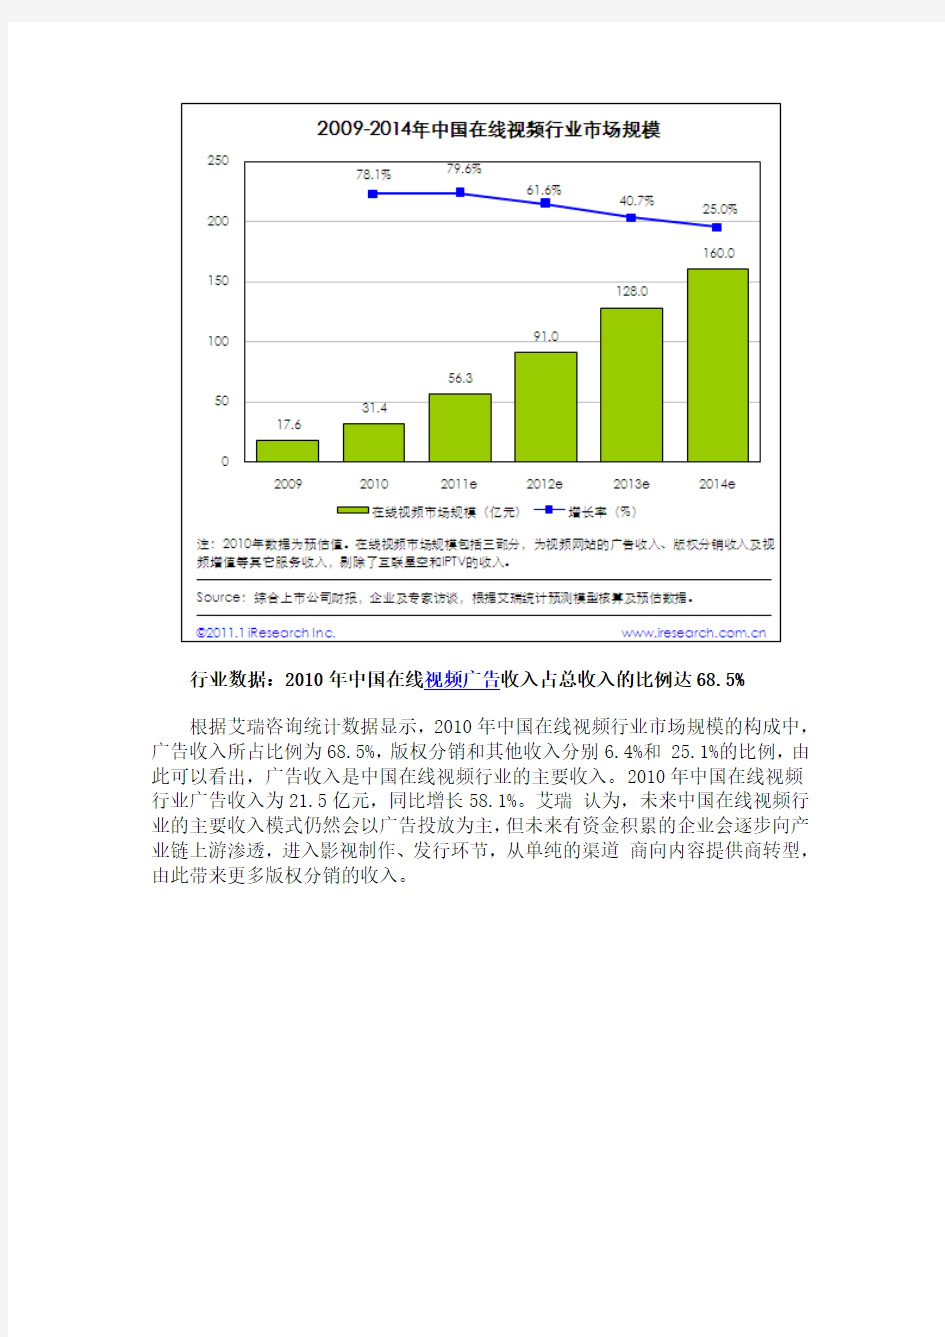 2010年中国在线视频年度数据发布